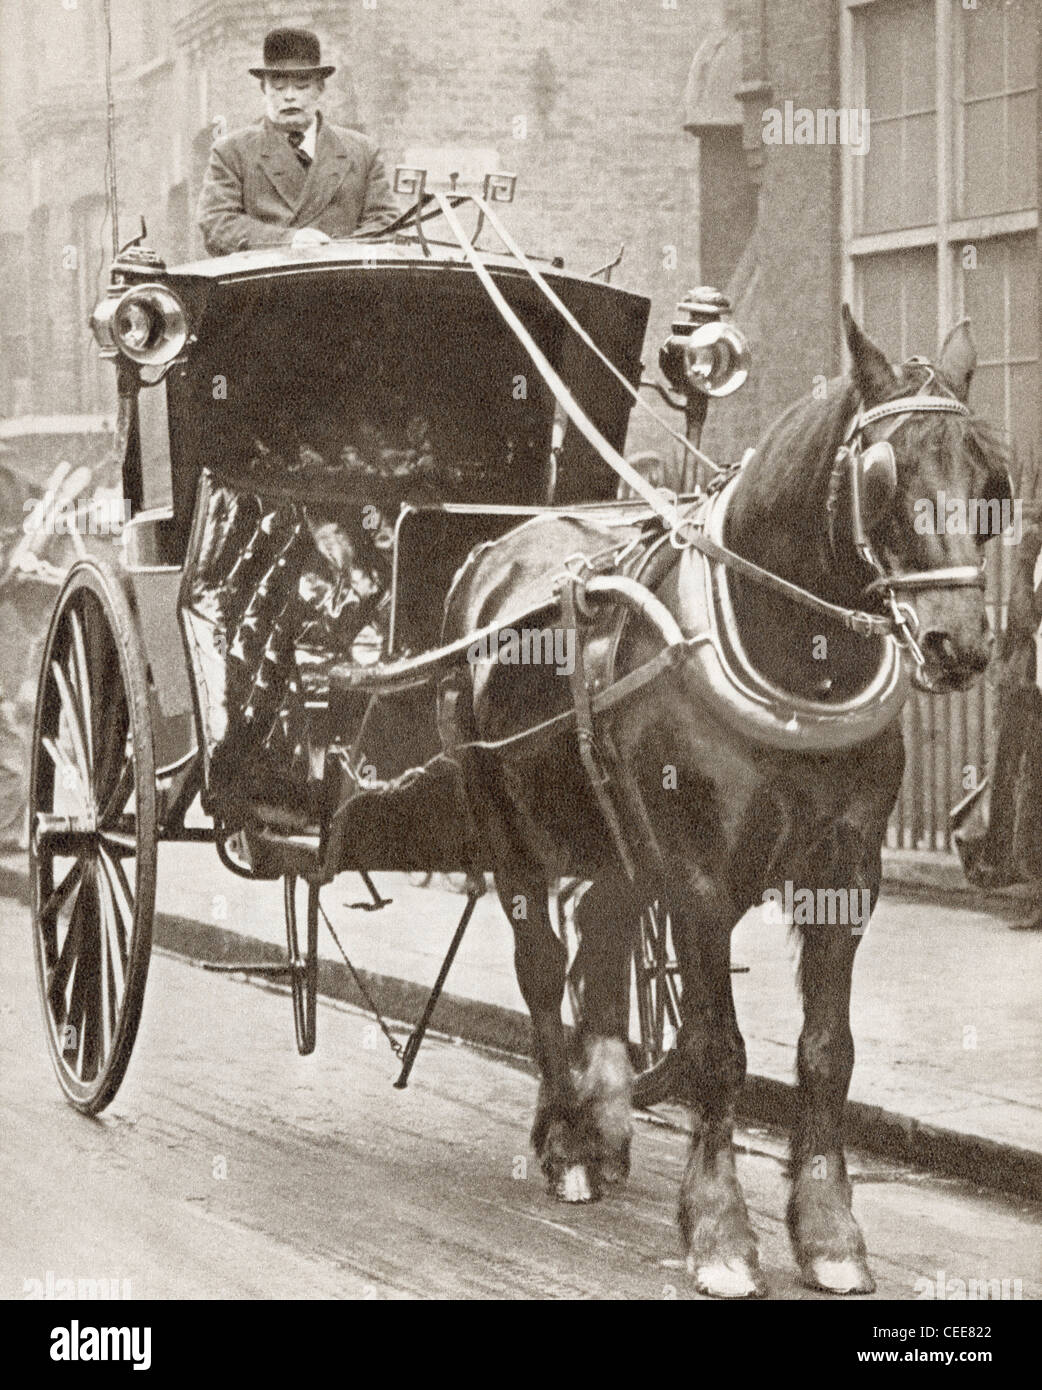 Ein Hansom Cab in London, England im Jahre 1910. Aus der Geschichte von 25 ereignisreiche Jahre in Bildern veröffentlicht 1935. Stockfoto